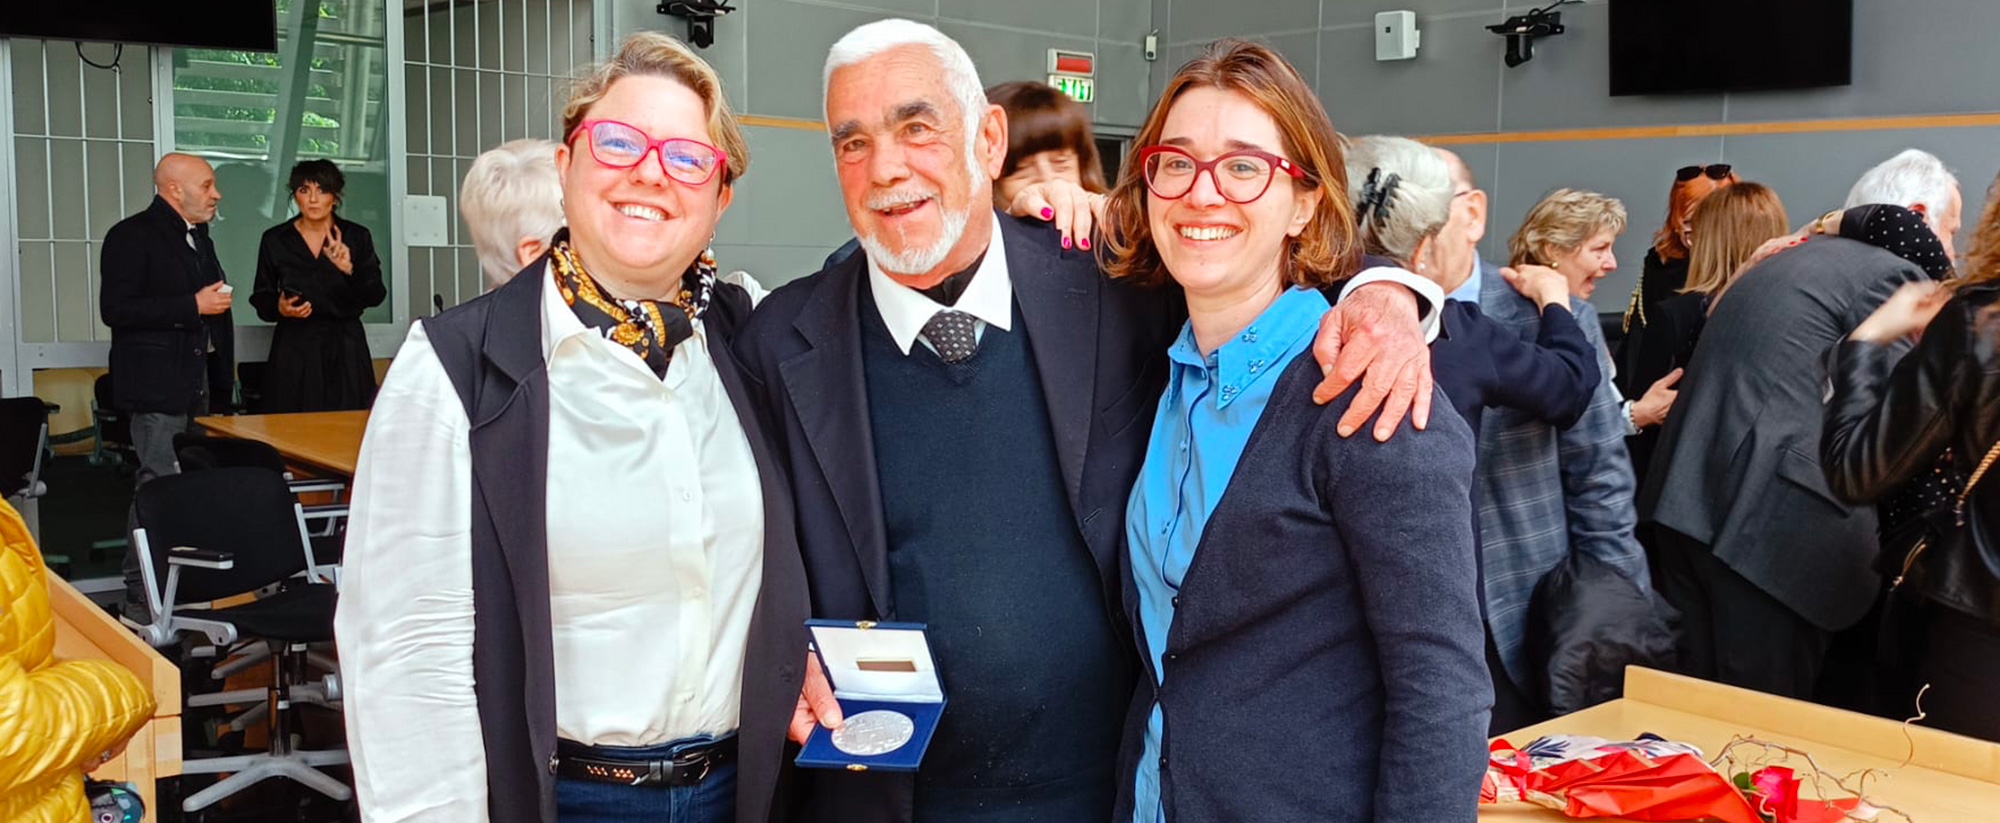 Avvocato Guido Chessa premiato per i 40 anni di Carriera al Tribunale di Arezzo